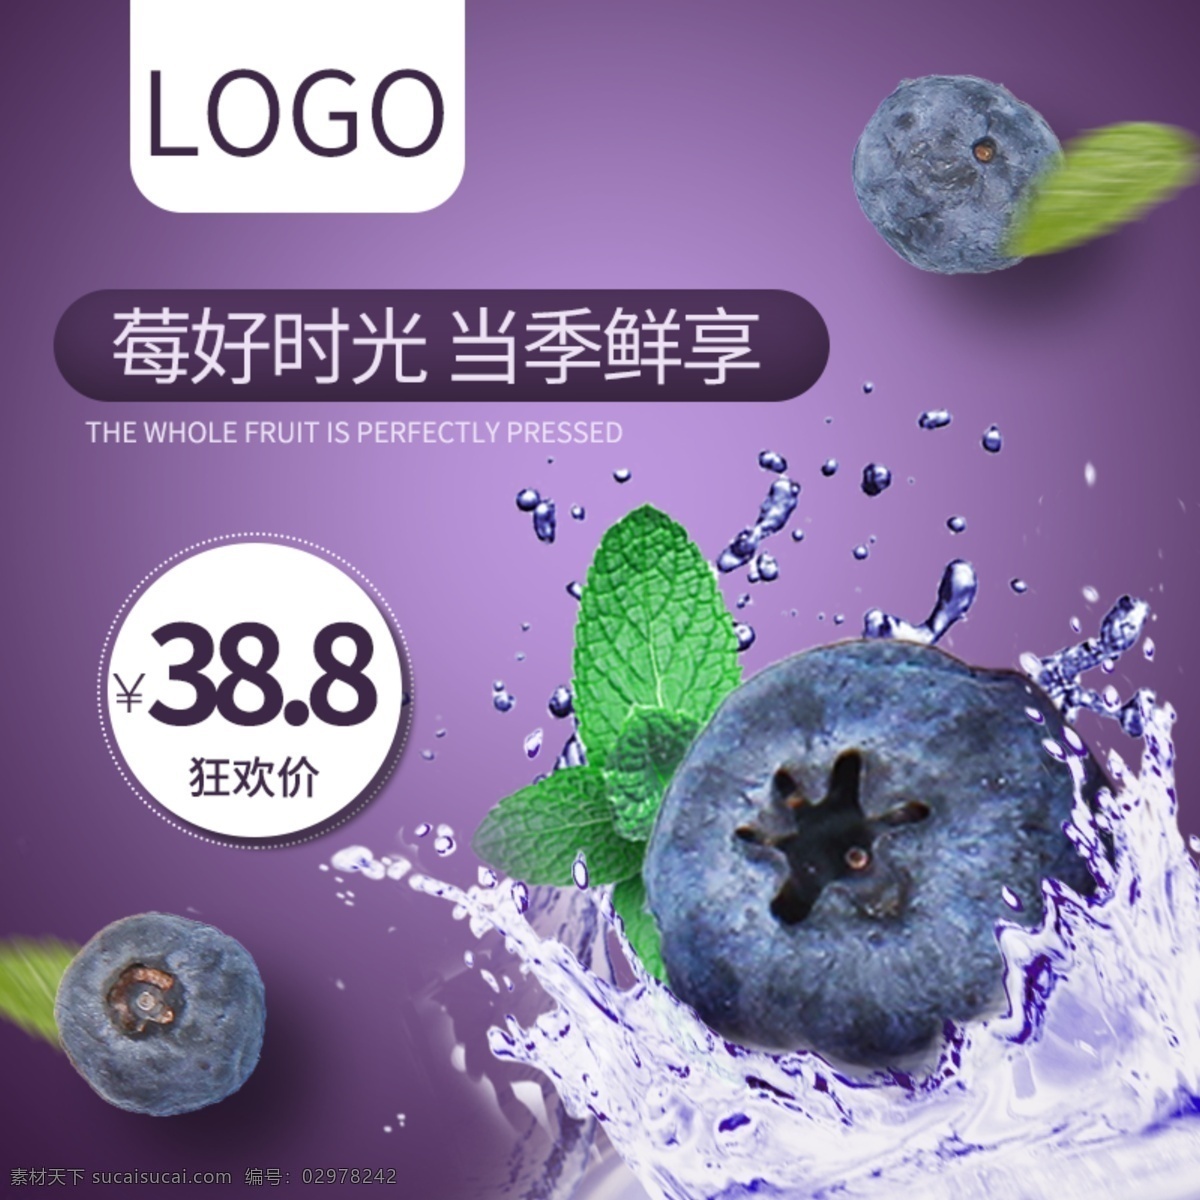 新鲜 水果 主 图 蓝莓 优惠 促销 新鲜水果主图 水果主图 简约大方 水果促销主图 紫色调